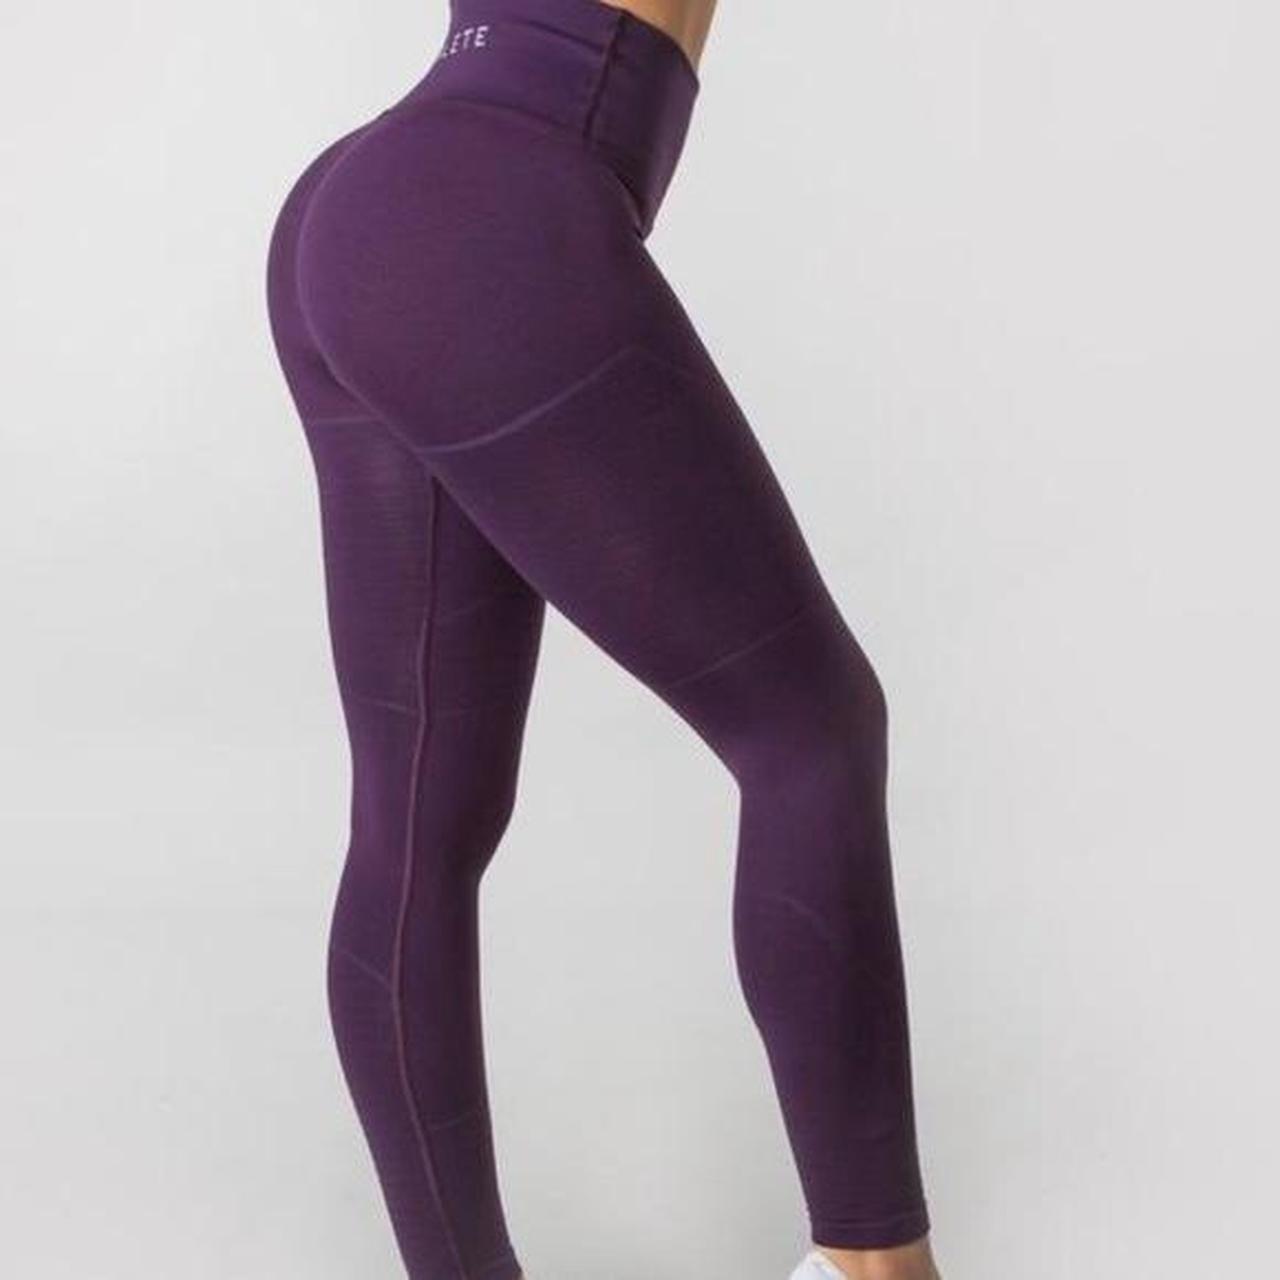 Alphalete Revival R6 leggings in Purple Noir xS. - Depop